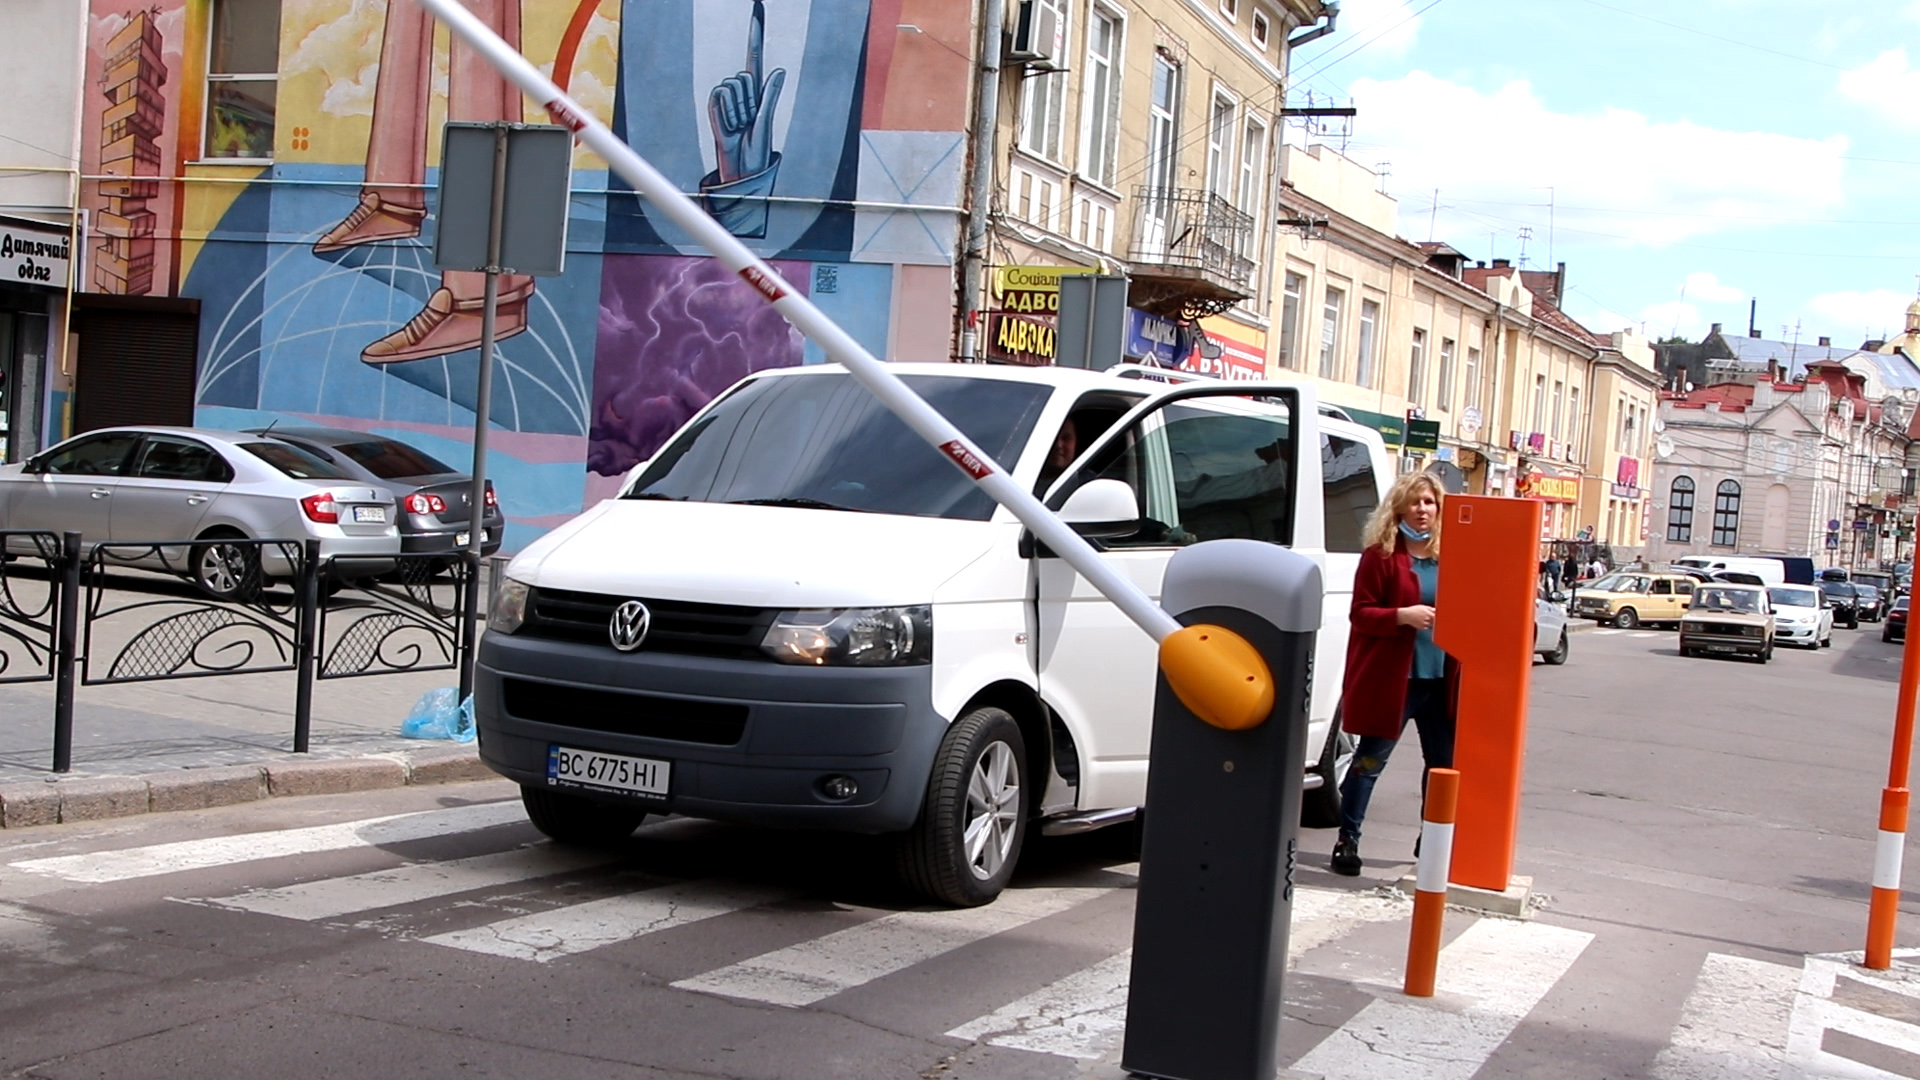 У День міста обмежать паркування автомобілів у центрі Дрогобича | Інтерактивна мапа парковок